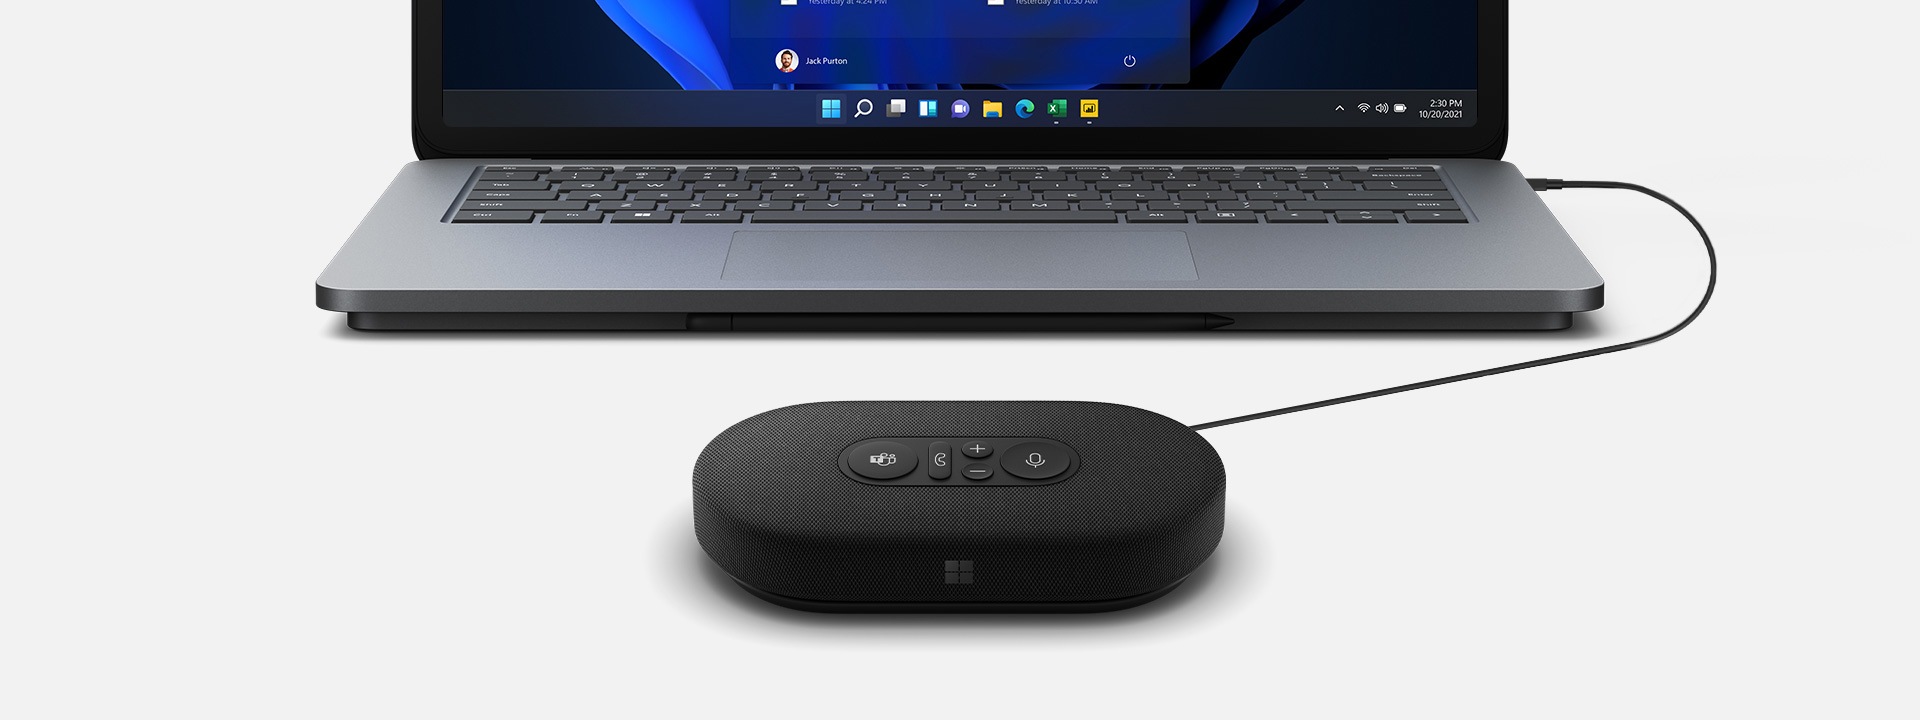 Renderelt kép egy Microsoft Modern USB-C-hangszóróról, amely a háttérben látható Surface eszközhöz van csatlakoztatva